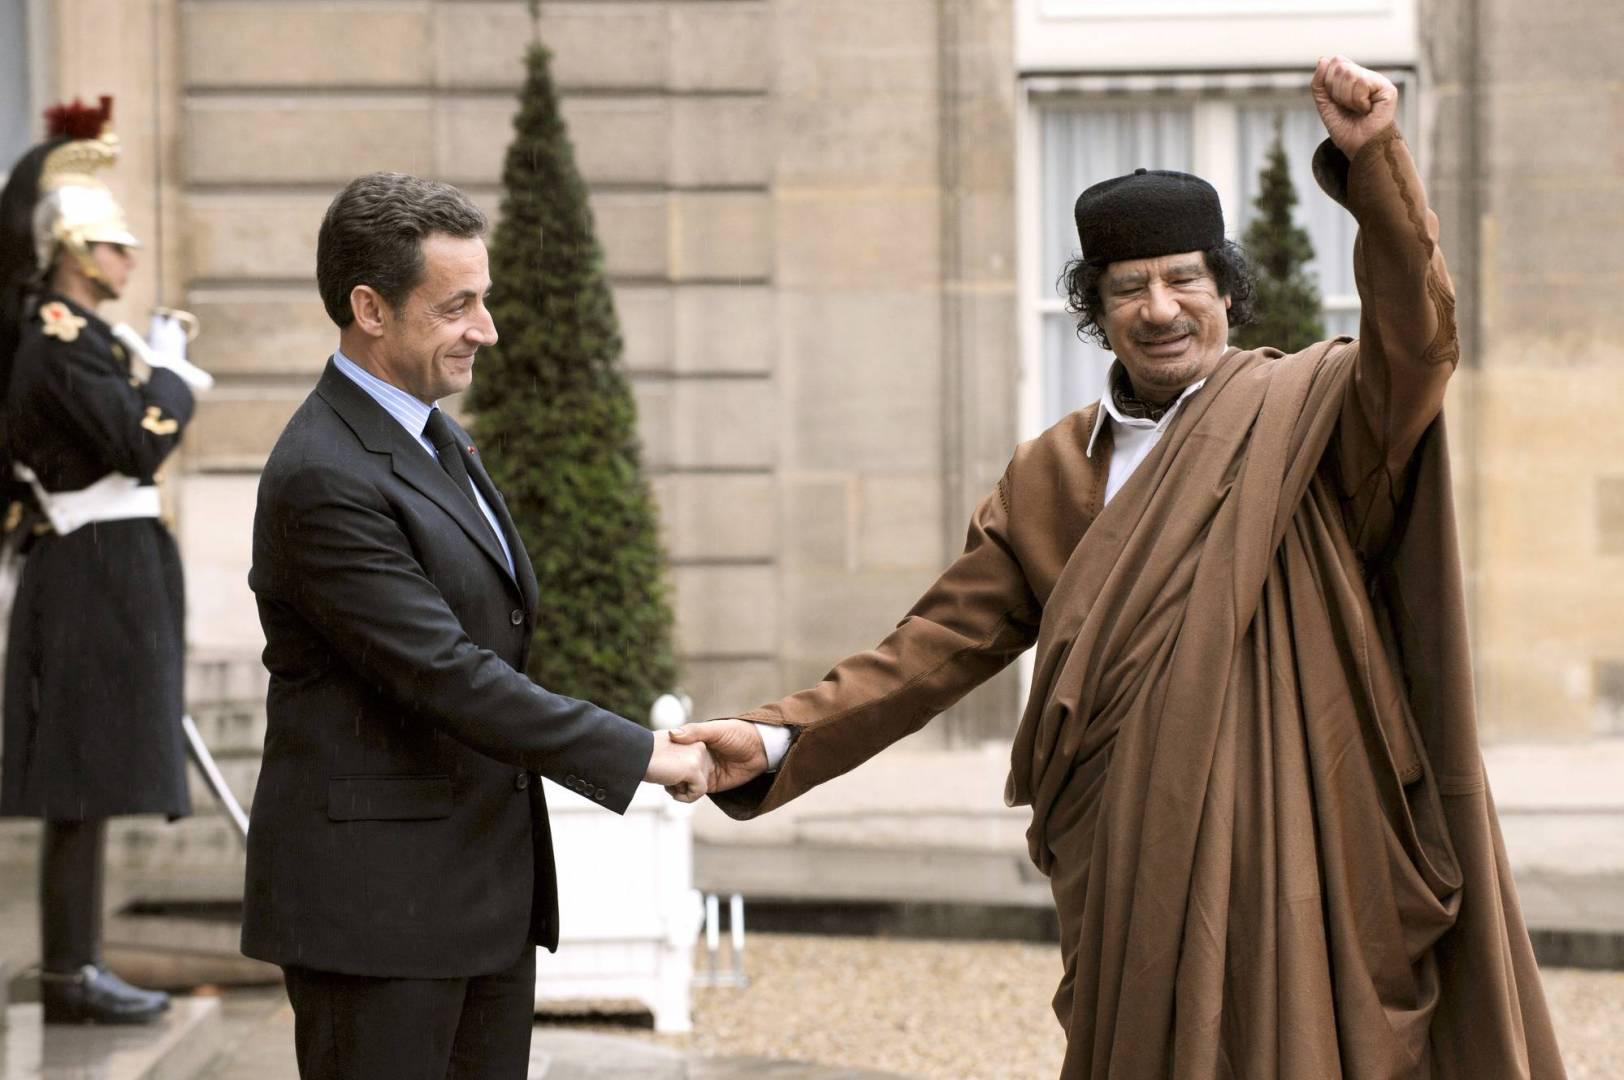  نيكولا ساركوزي مع الزعيم الليبي  معمر القذافي